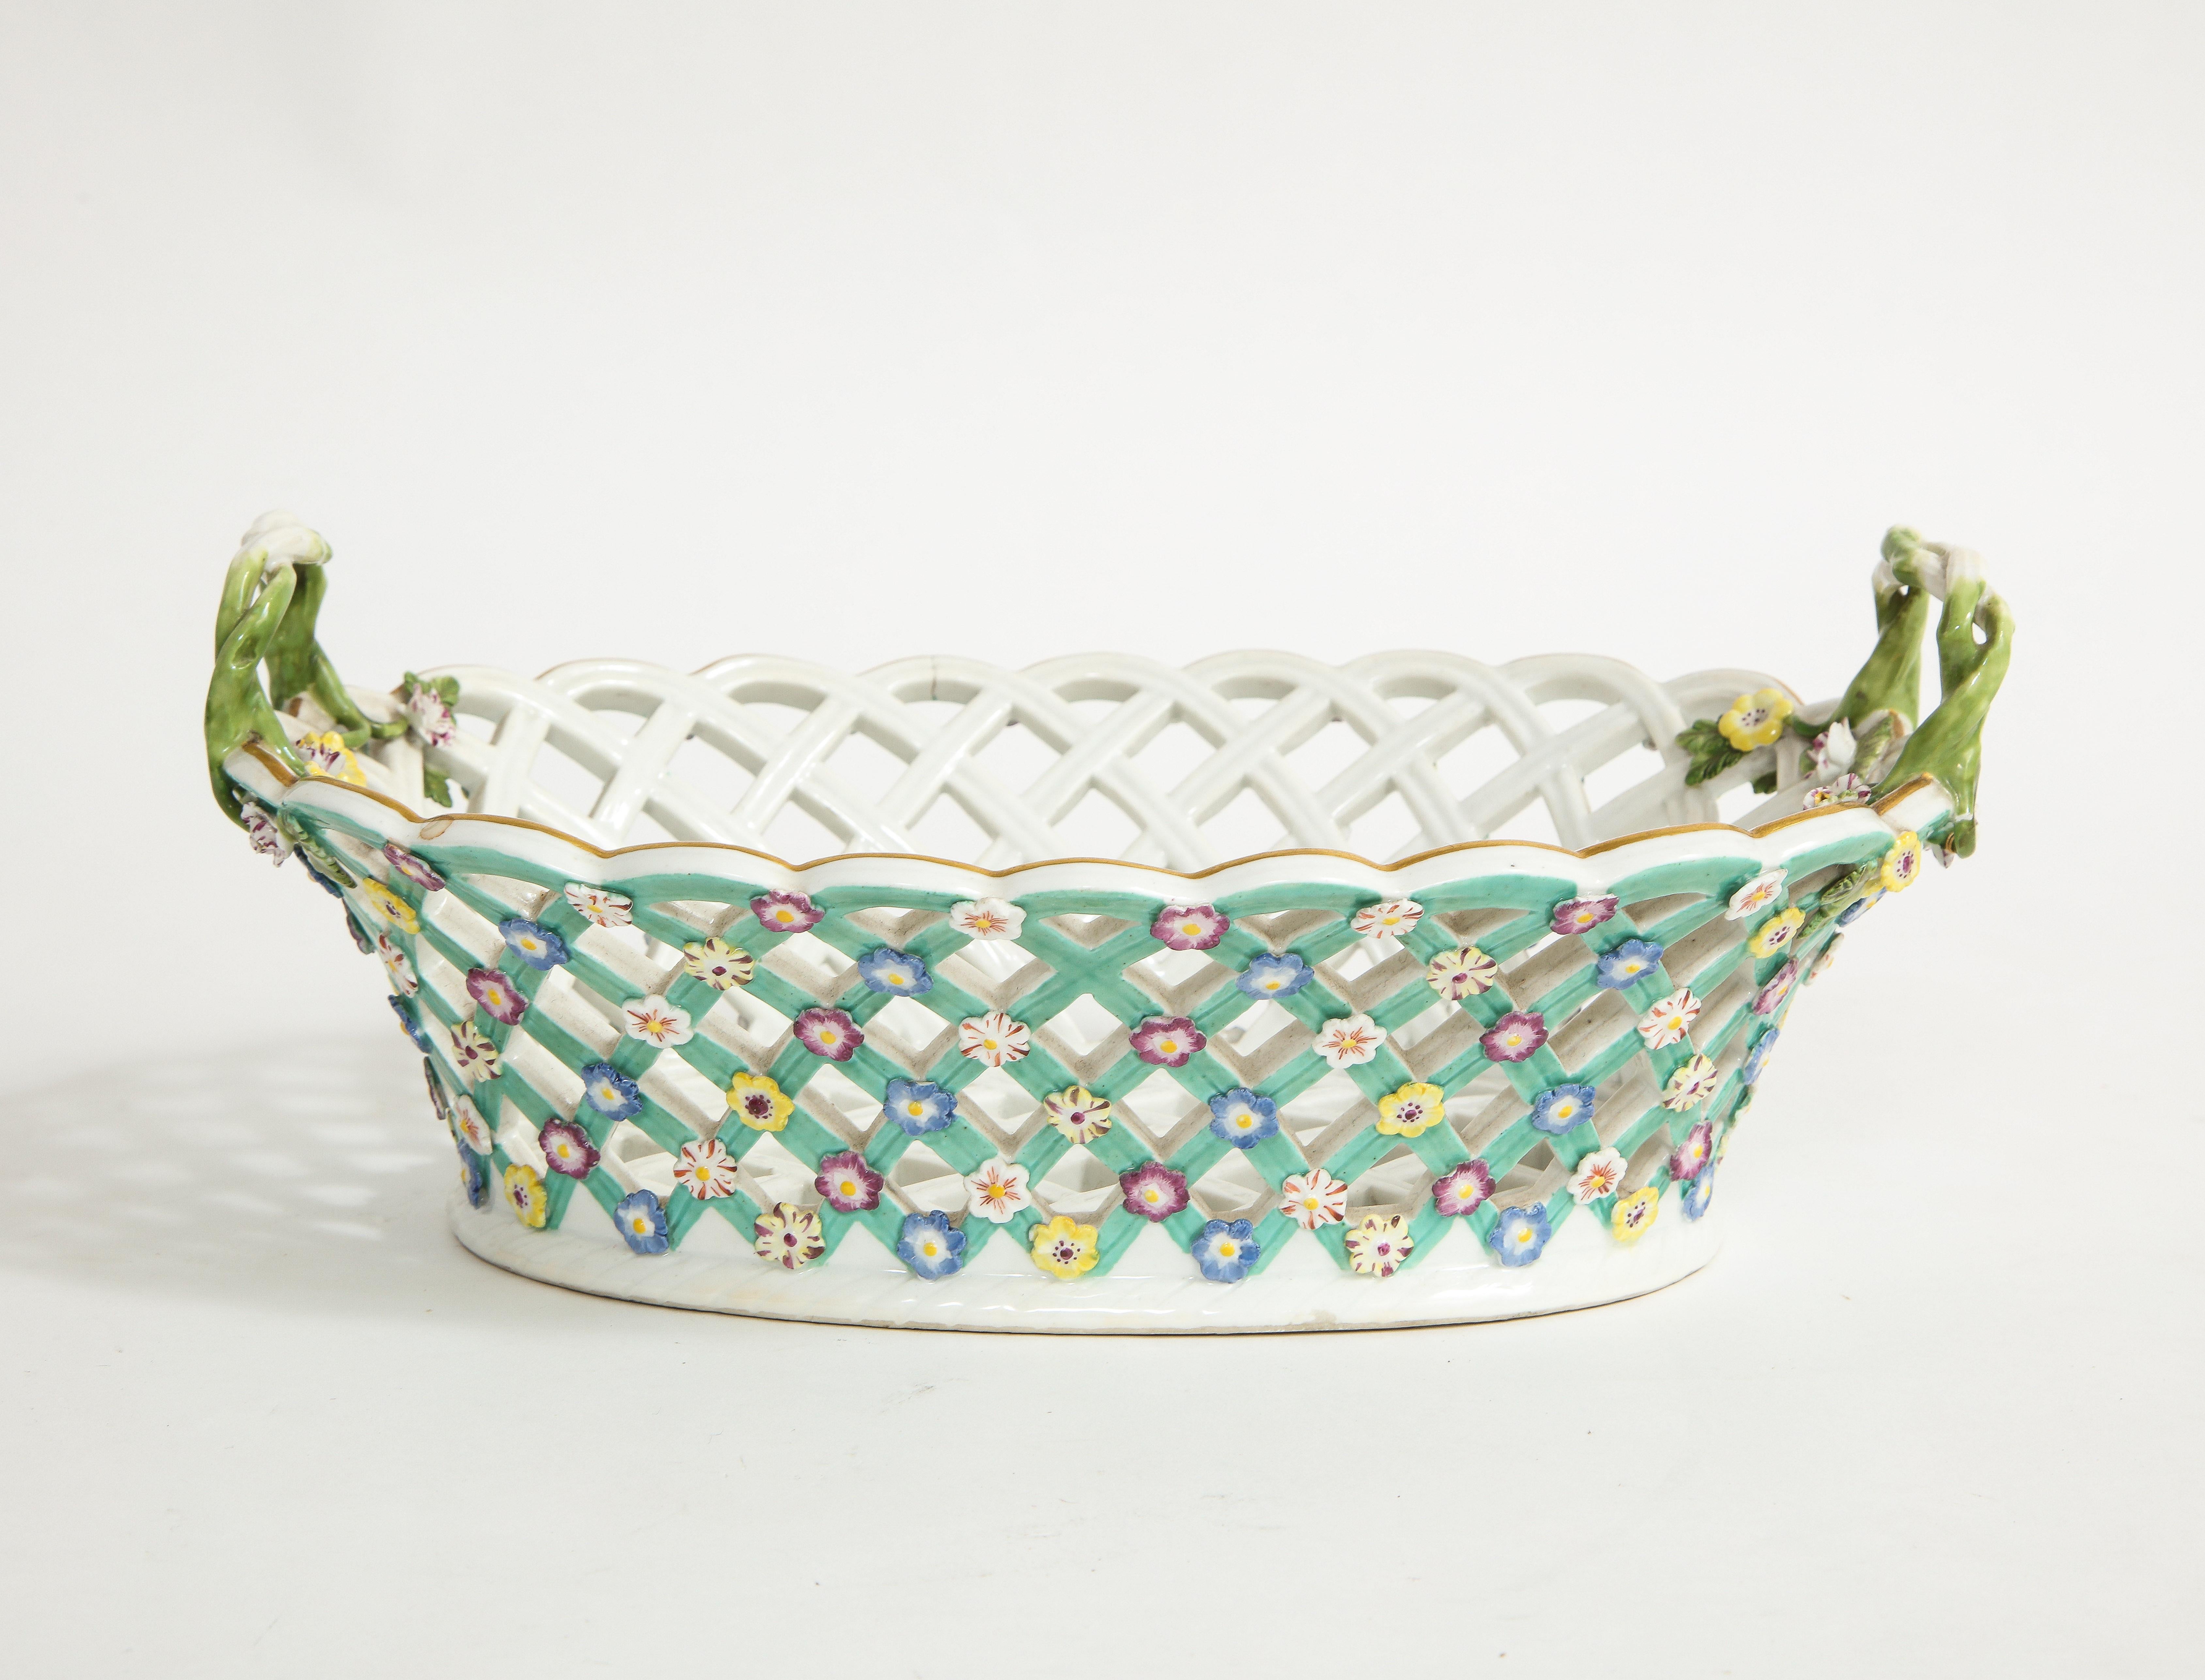 Incroyable panier réticulé en porcelaine de Meissen du XVIIIe siècle, avec des anses en vigne et des fleurs incrustées. Cette pièce est très rare, surtout dans cet état, avec des fleurs appliquées peintes à la main et du bleu turquoise sur